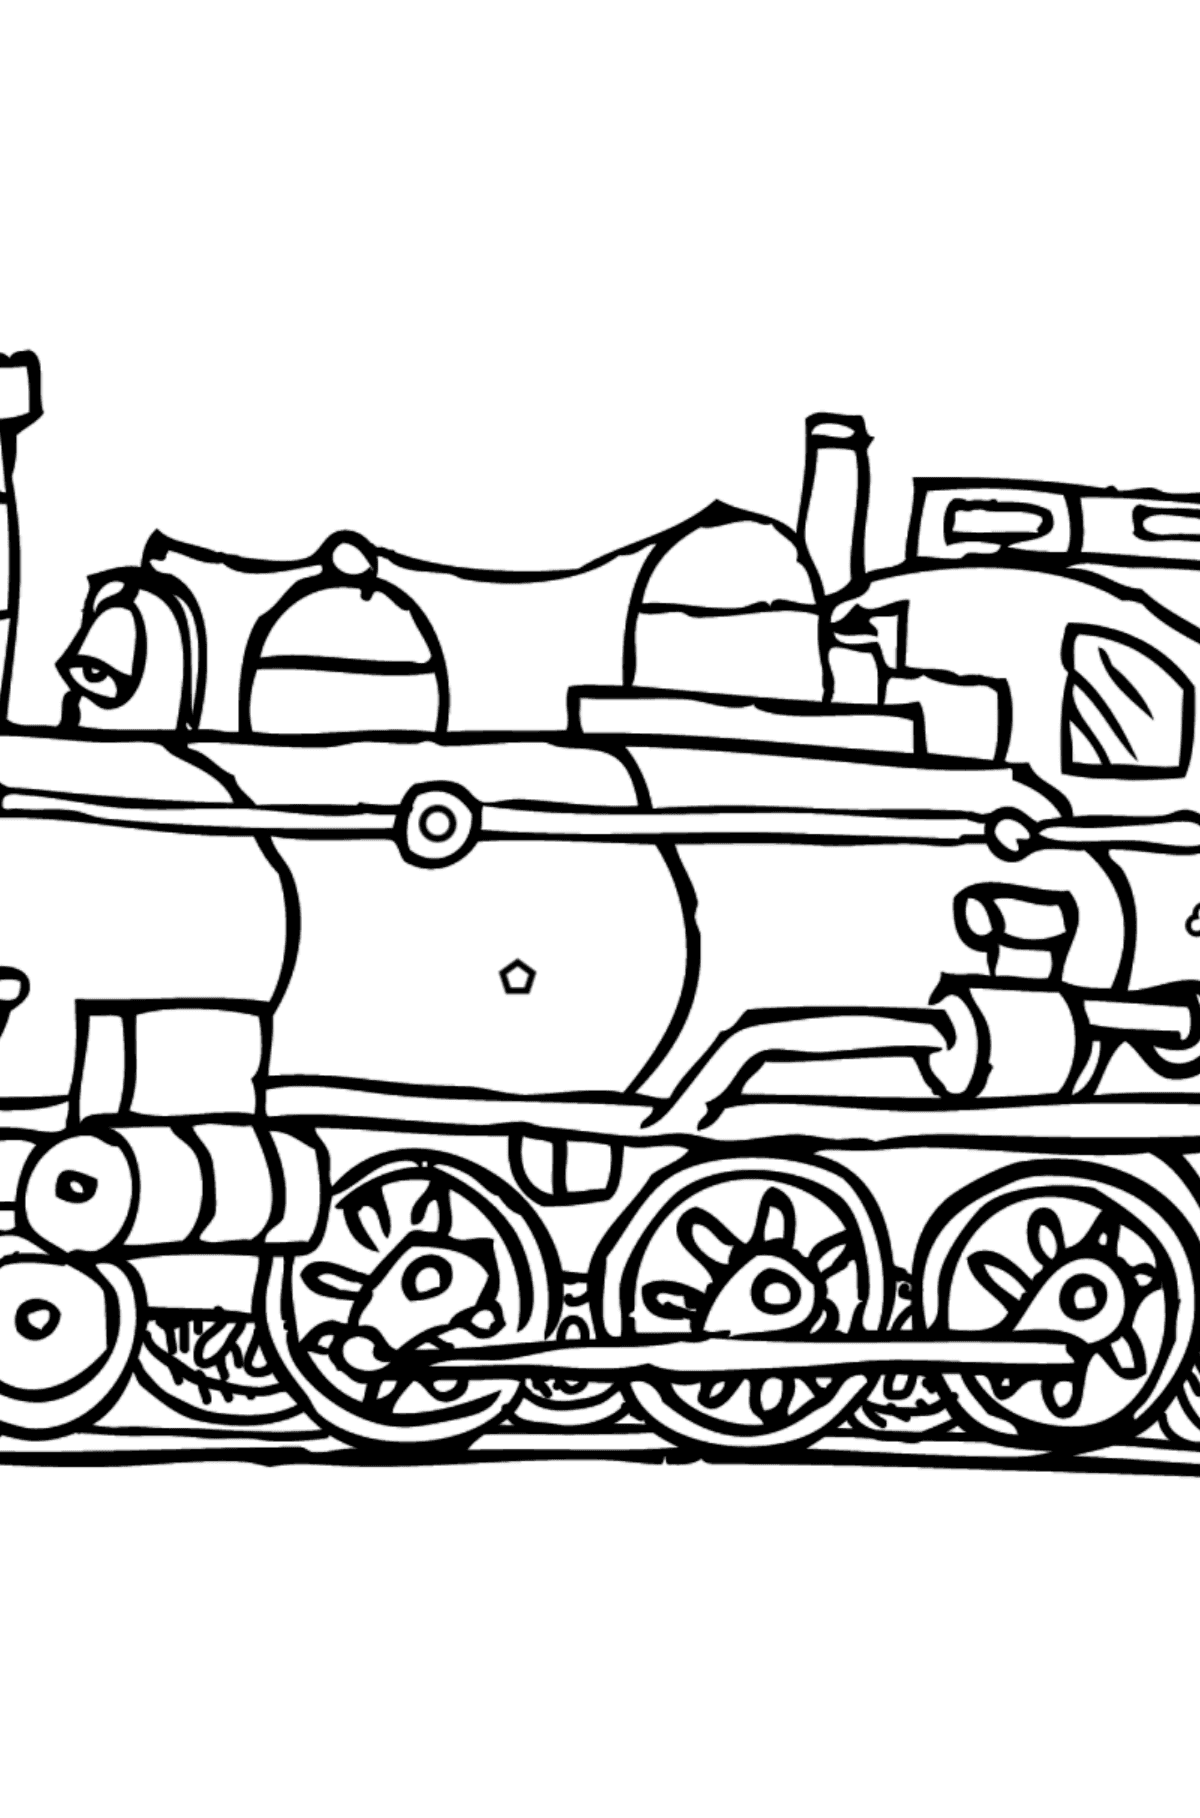 Tegning til fargelegging lokomotiv - Fargelegge etter geometriske former for barn